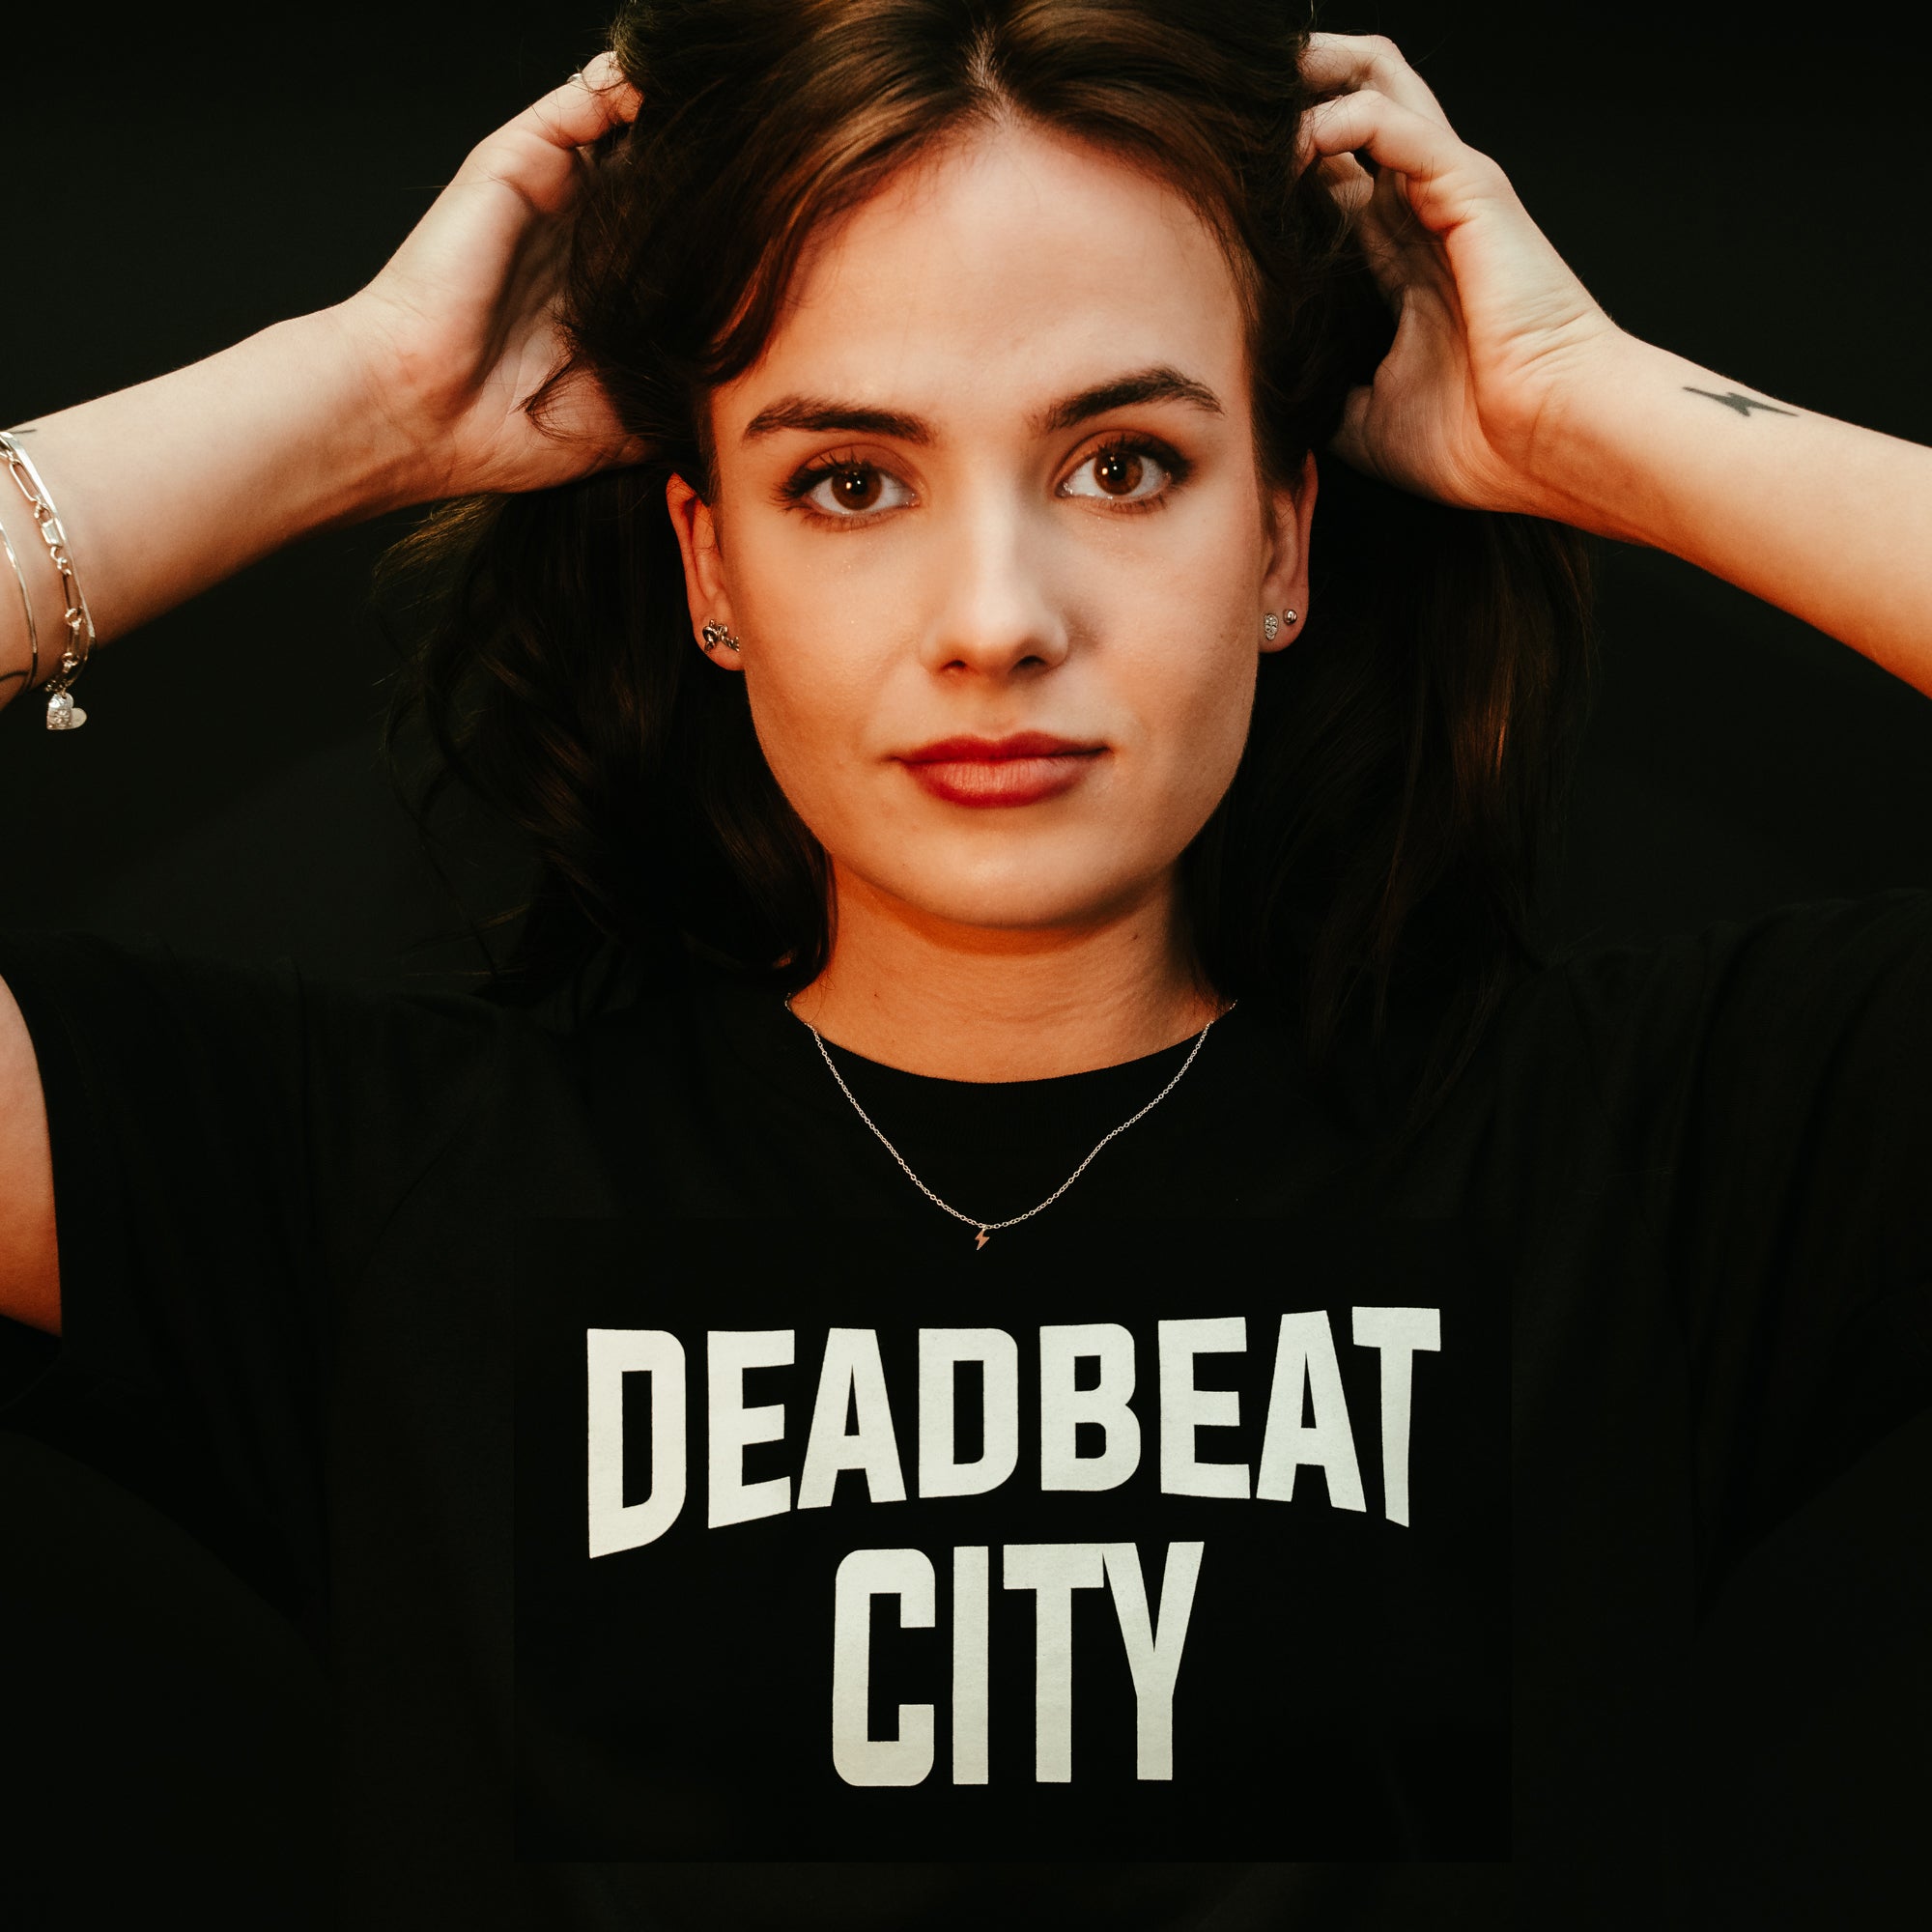 Deadbeat City Skinny T-Shirt by db deadbeat